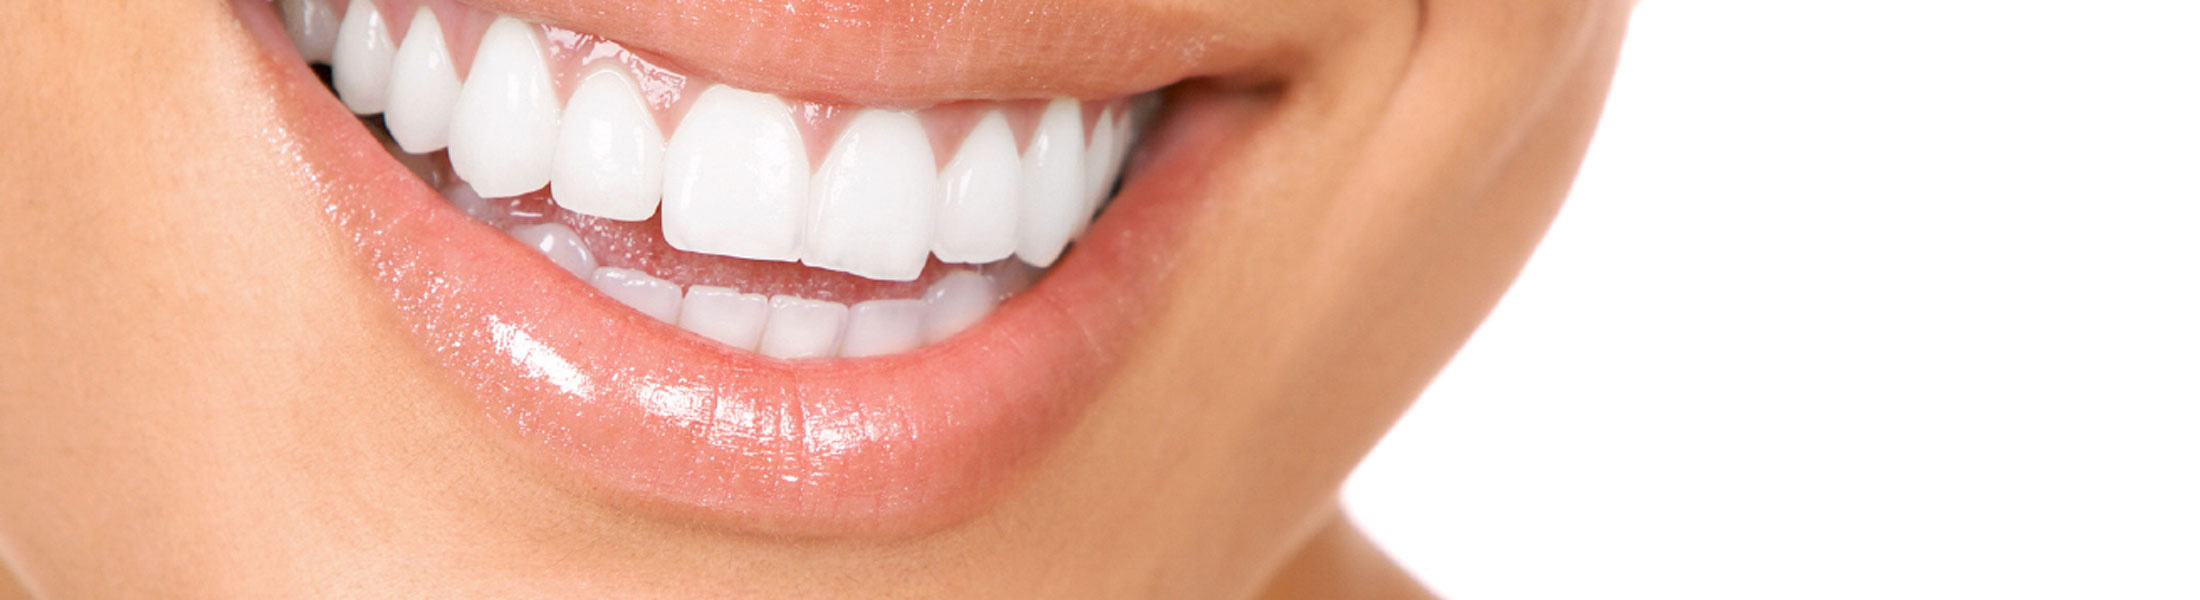 Gewissenhafte Mundhygiene hilft Parodontitis zu verhindern